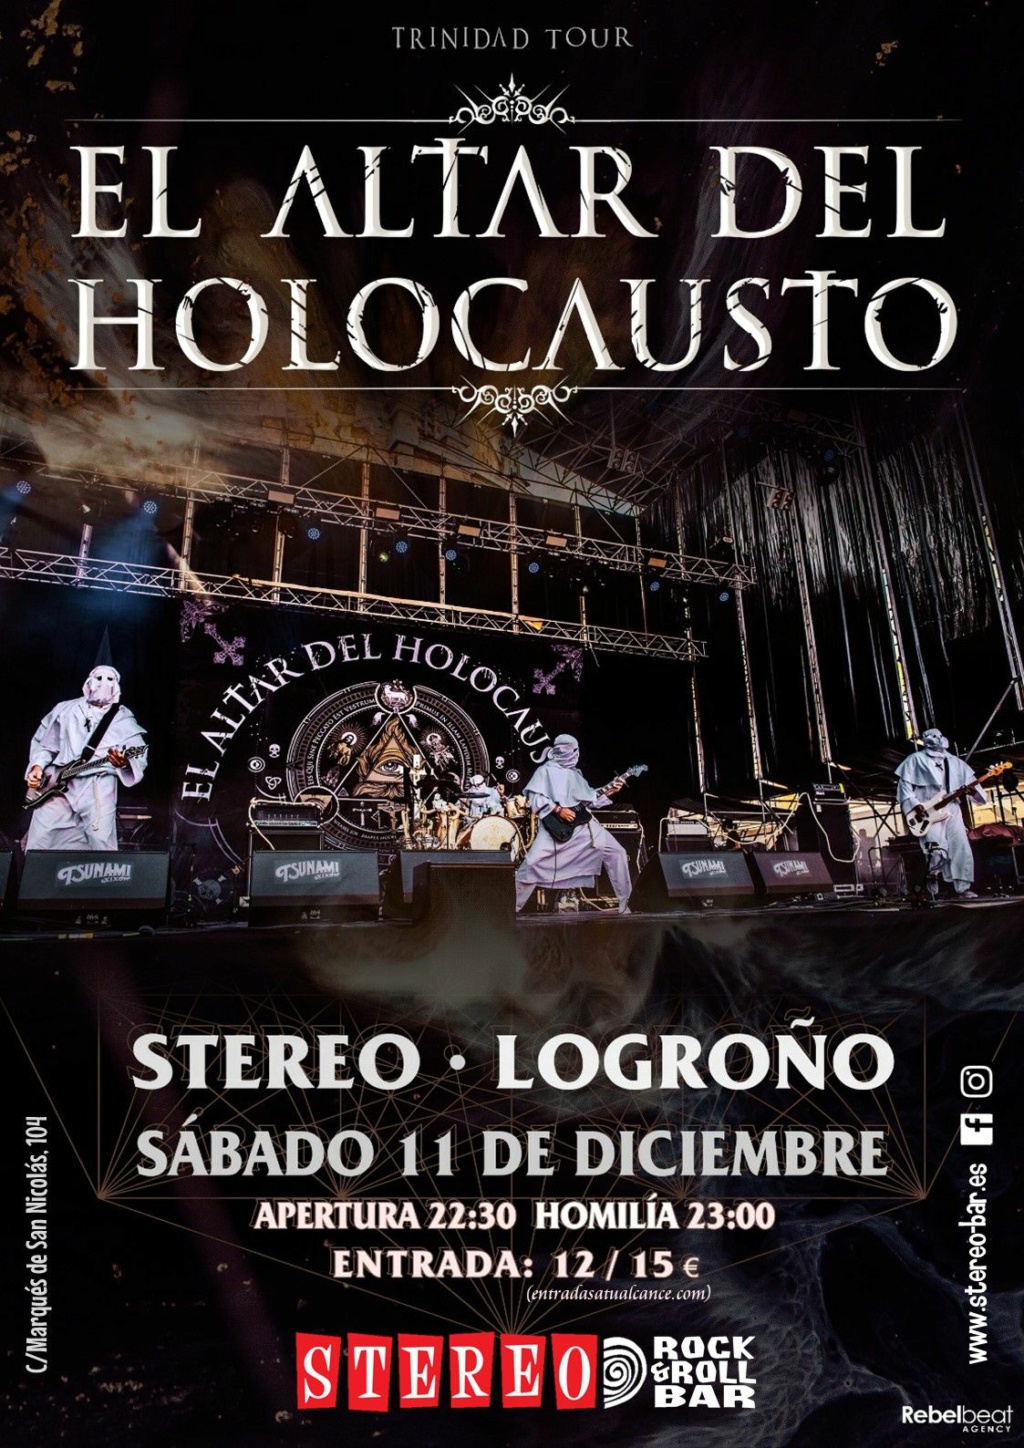 El Altar Del Holocausto: ¡¡¡Nuevas fechas para presentar ✞ T R I N I DAD !!!!! ( Villava 27 mayo - Zaragoza - 28 mayo) - Página 18 Logroz11